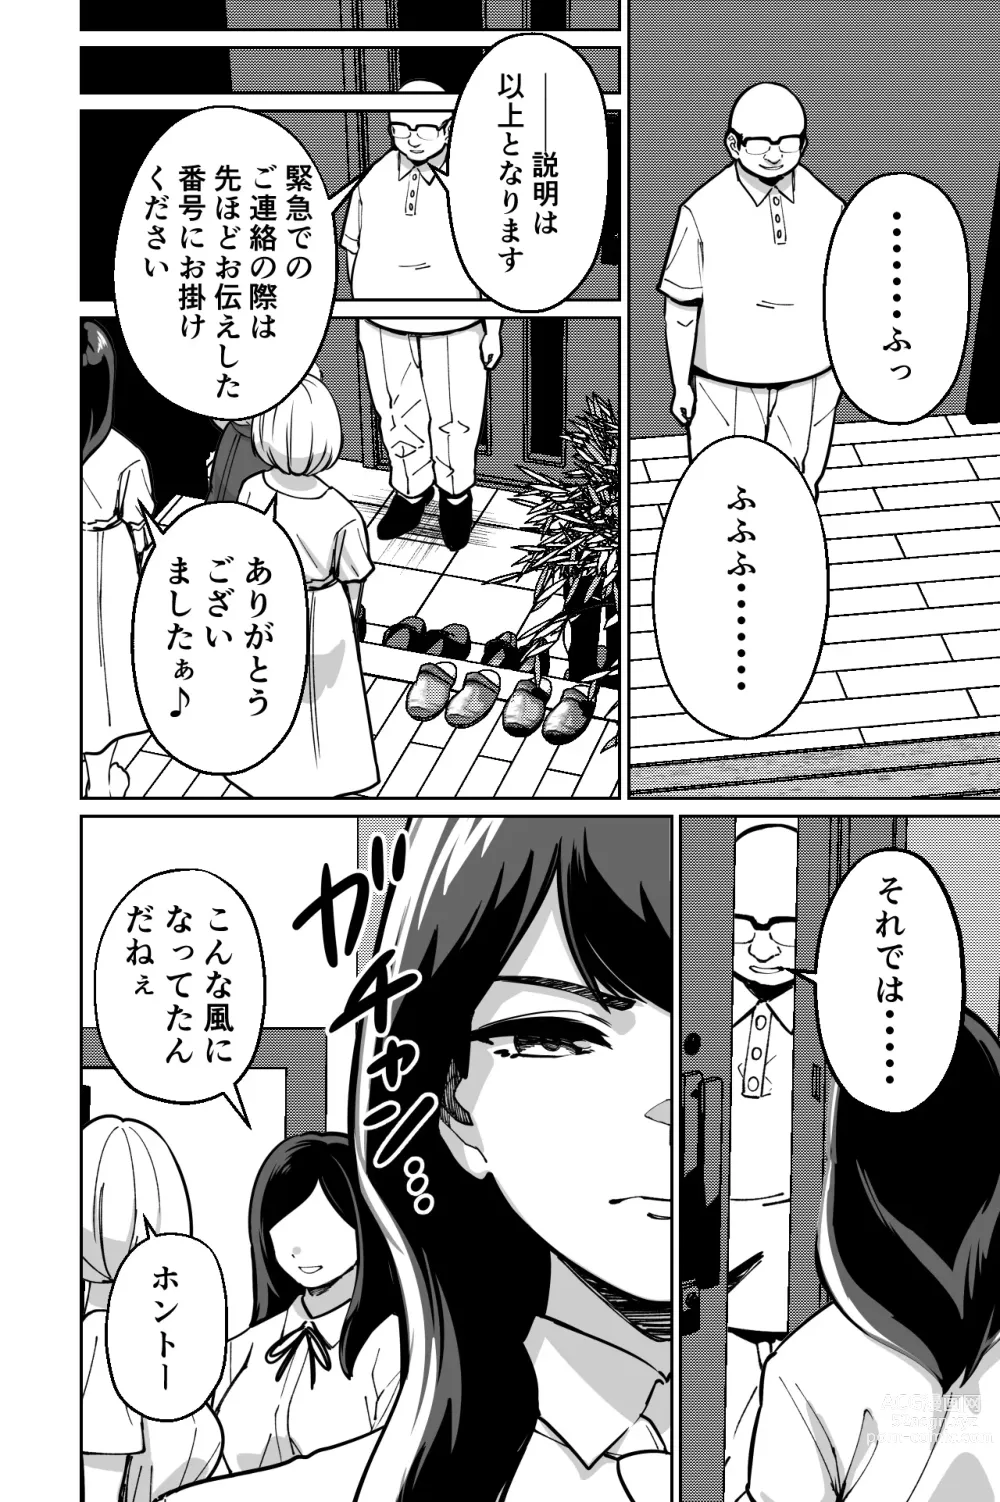 Page 18 of doujinshi Minpaku ~Ojou-sama-tachi wa Minpaku Keieisha no Wana ni Ochiru~